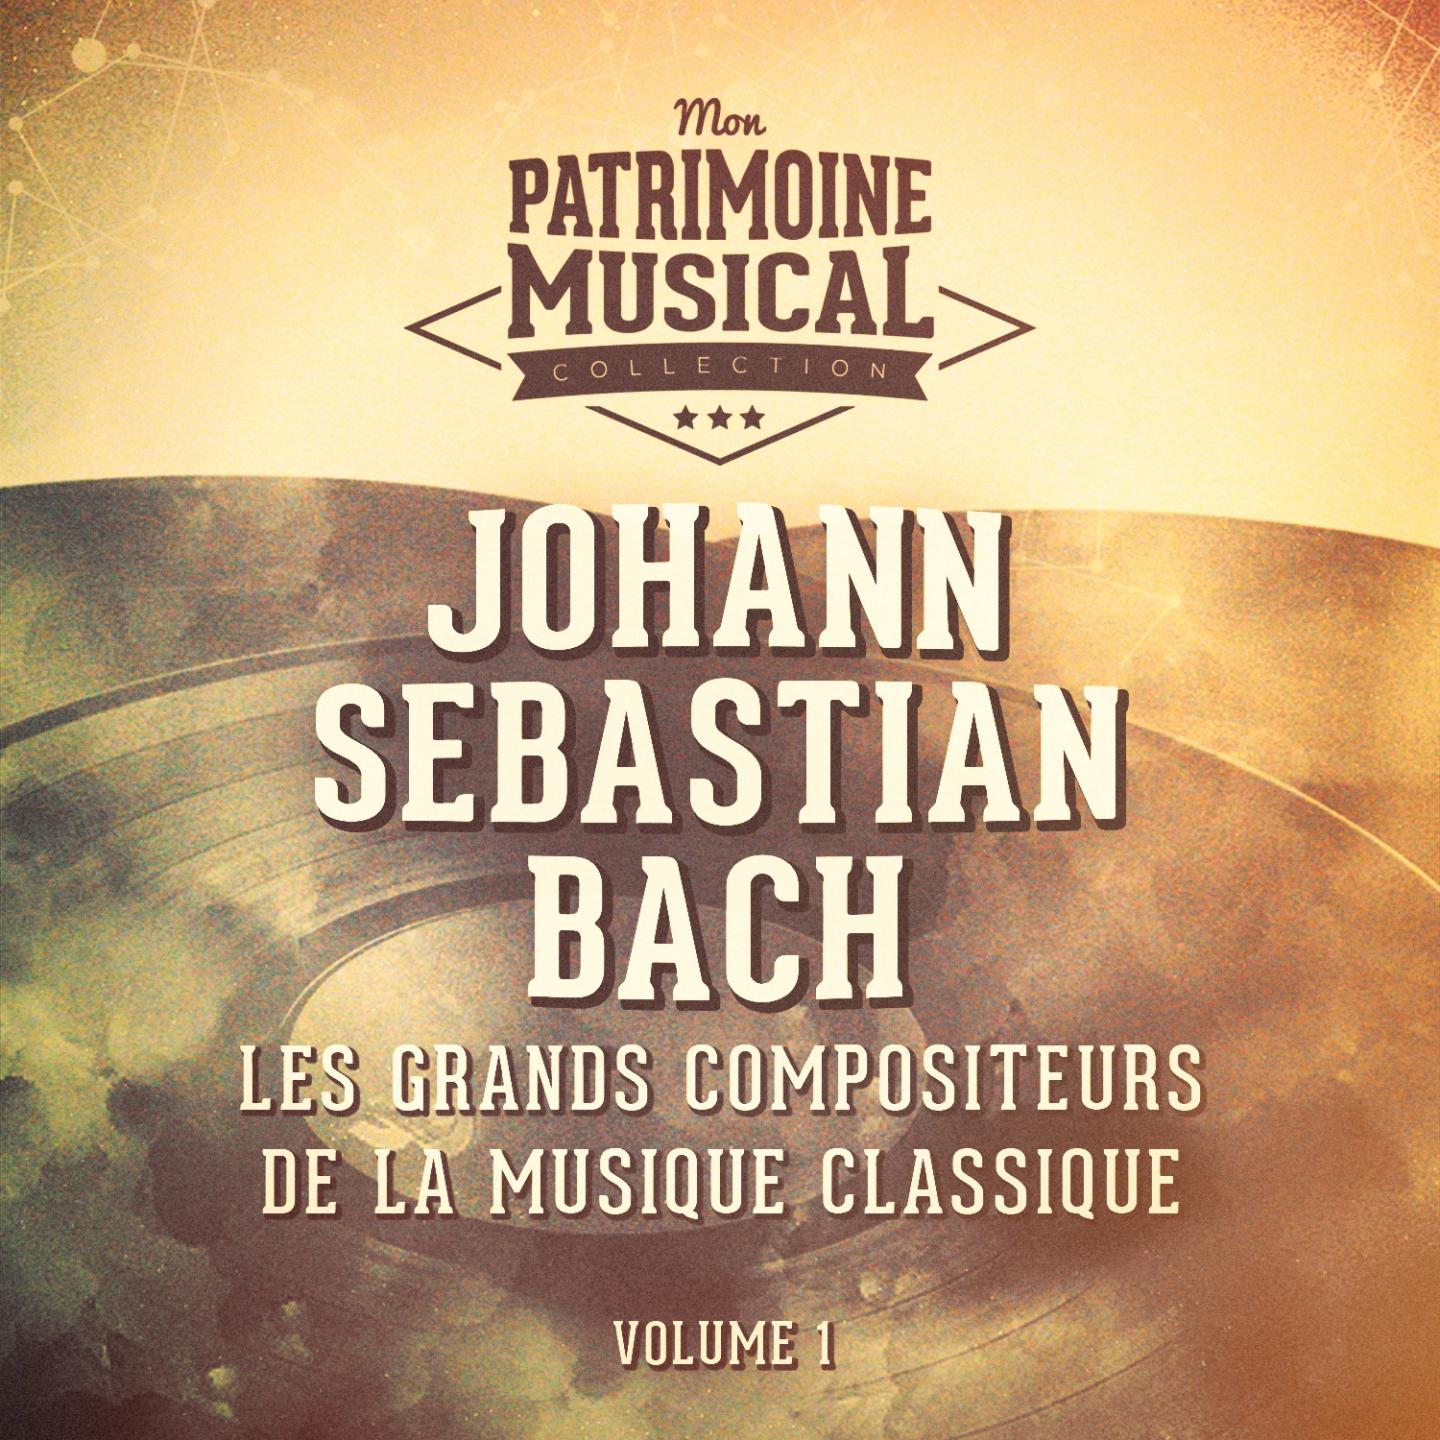 Les grands compositeurs de la musique classique : Johann Sebastian Bach, Vol. 1